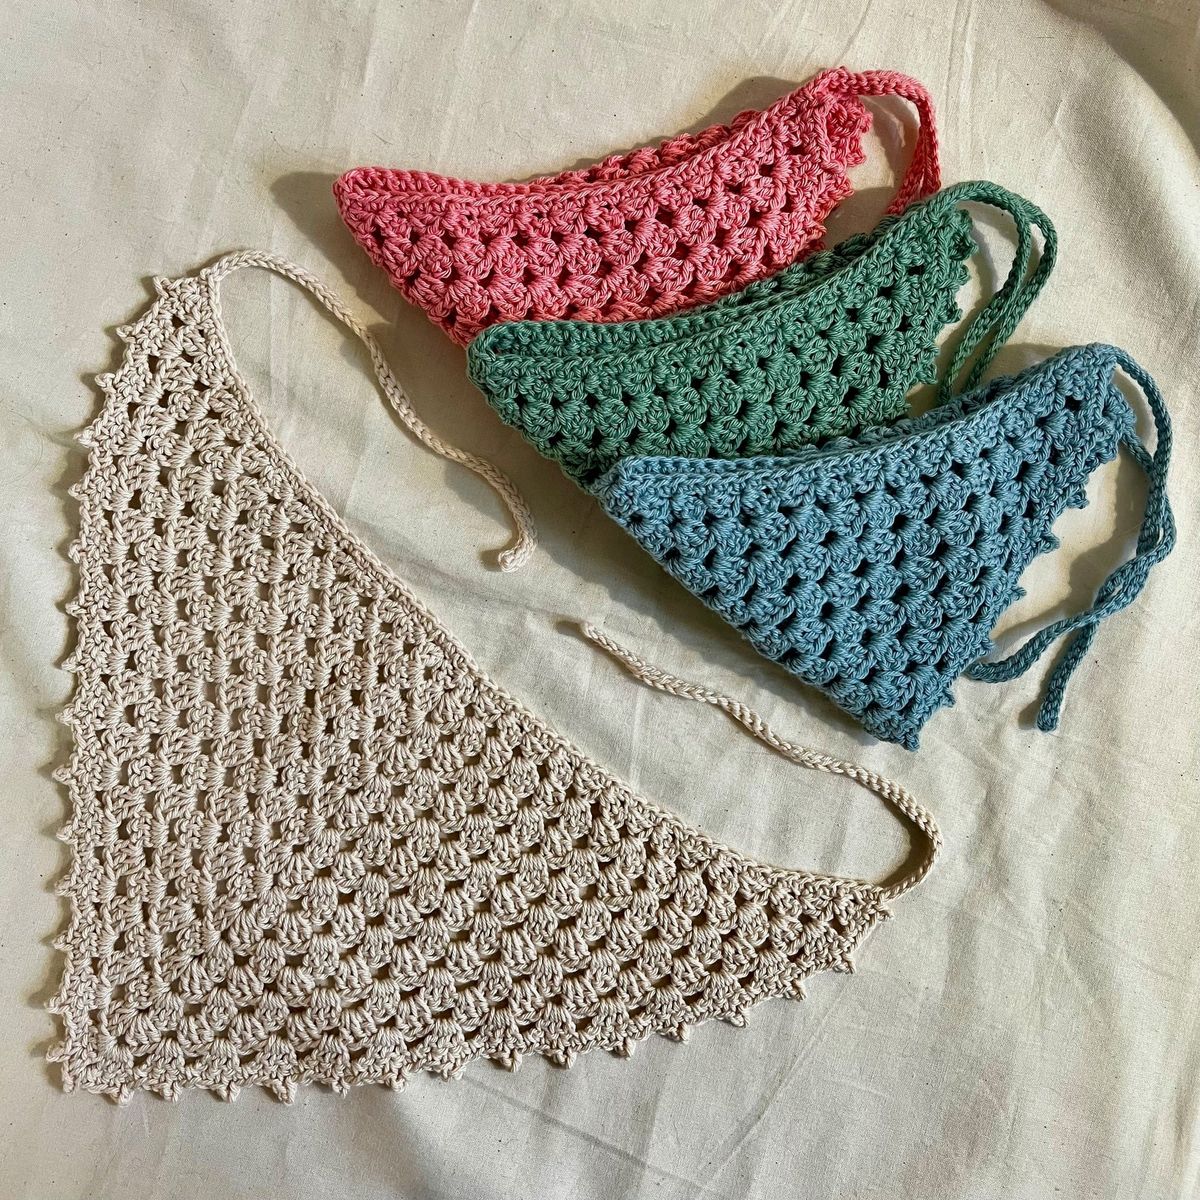 Beginner\u2019s Crochet Class